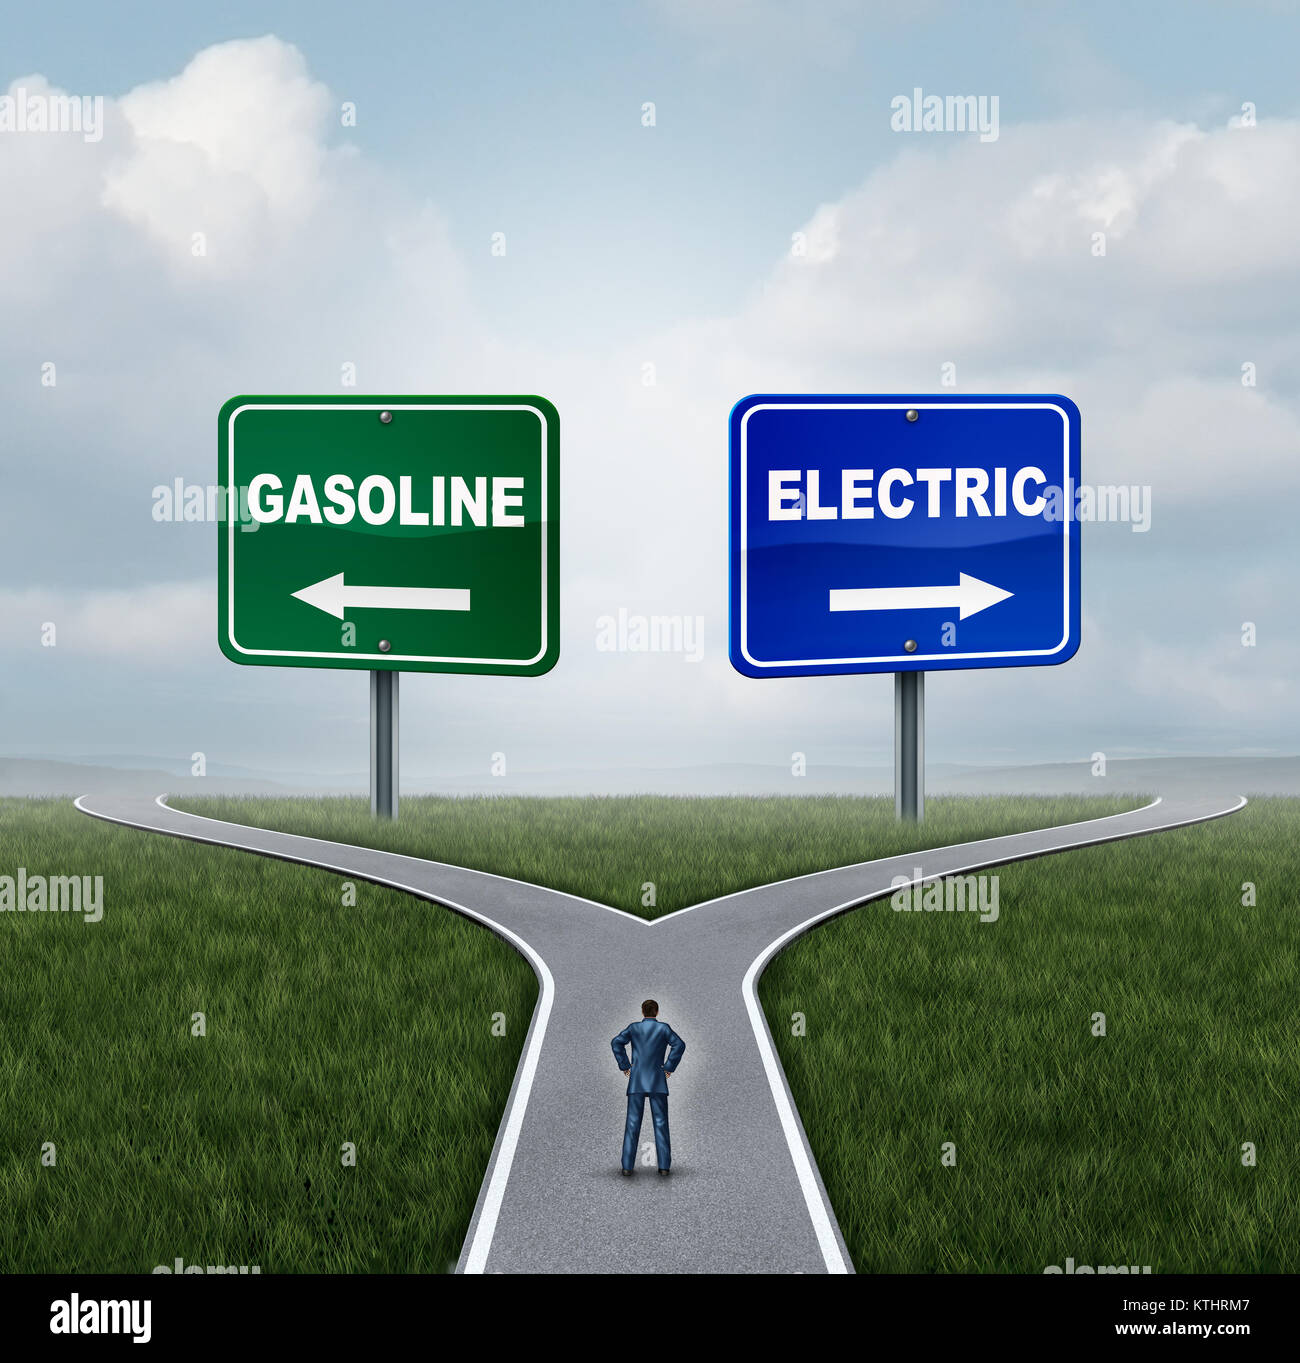 Elektrisch oder Benzin Energie Wahl Konzept wie eine verwirrte Person an einer Kreuzung zwischen Gas Kraftstoff Strom oder Batterie entscheiden. Stockfoto